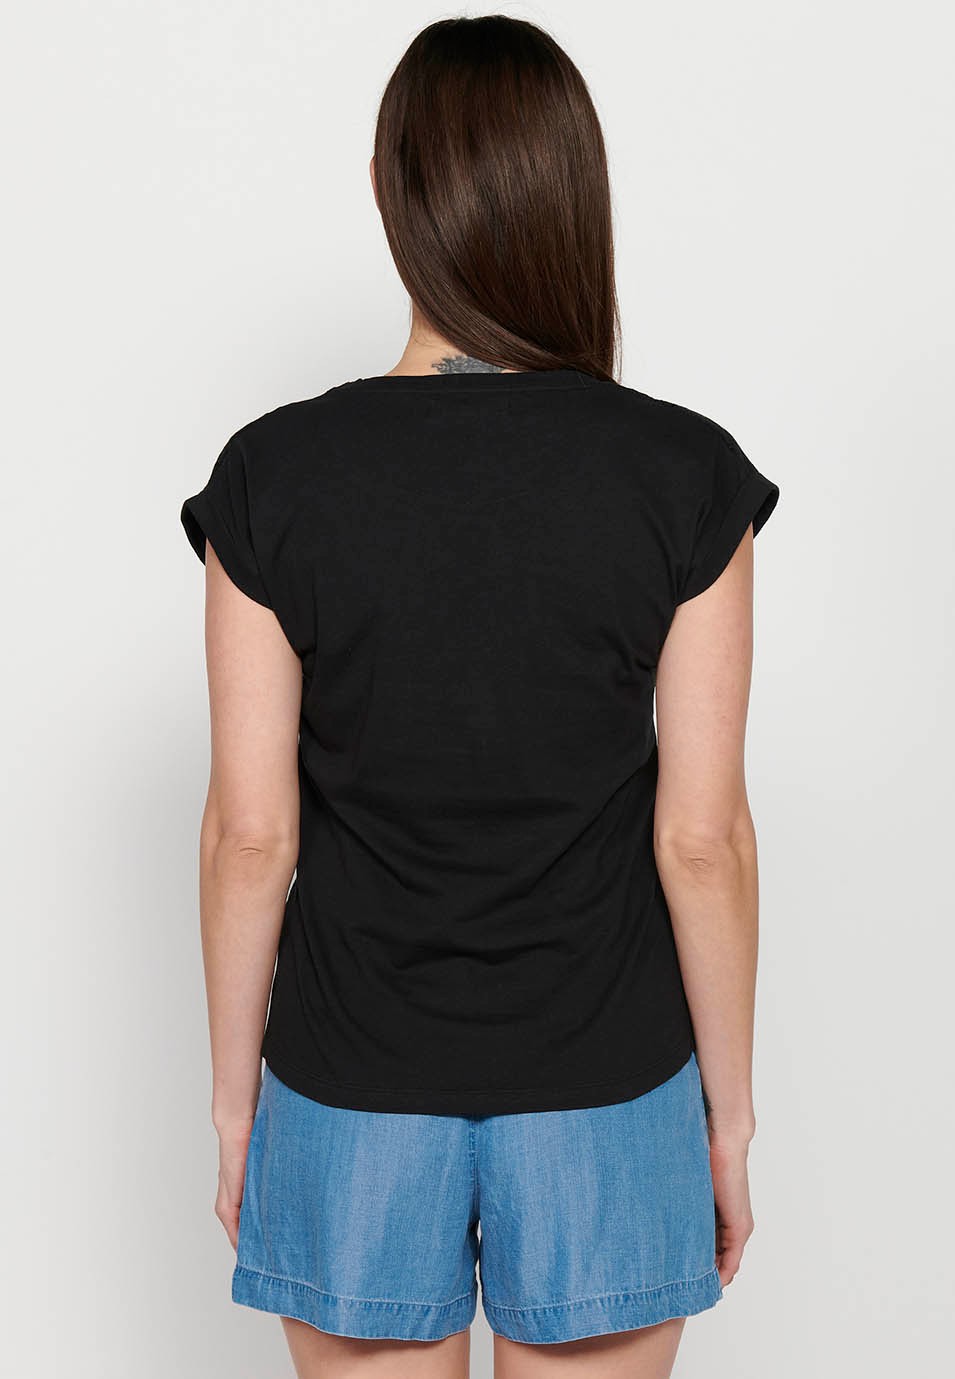 T-shirt noir à manches courtes et col rond brodé pour femmes